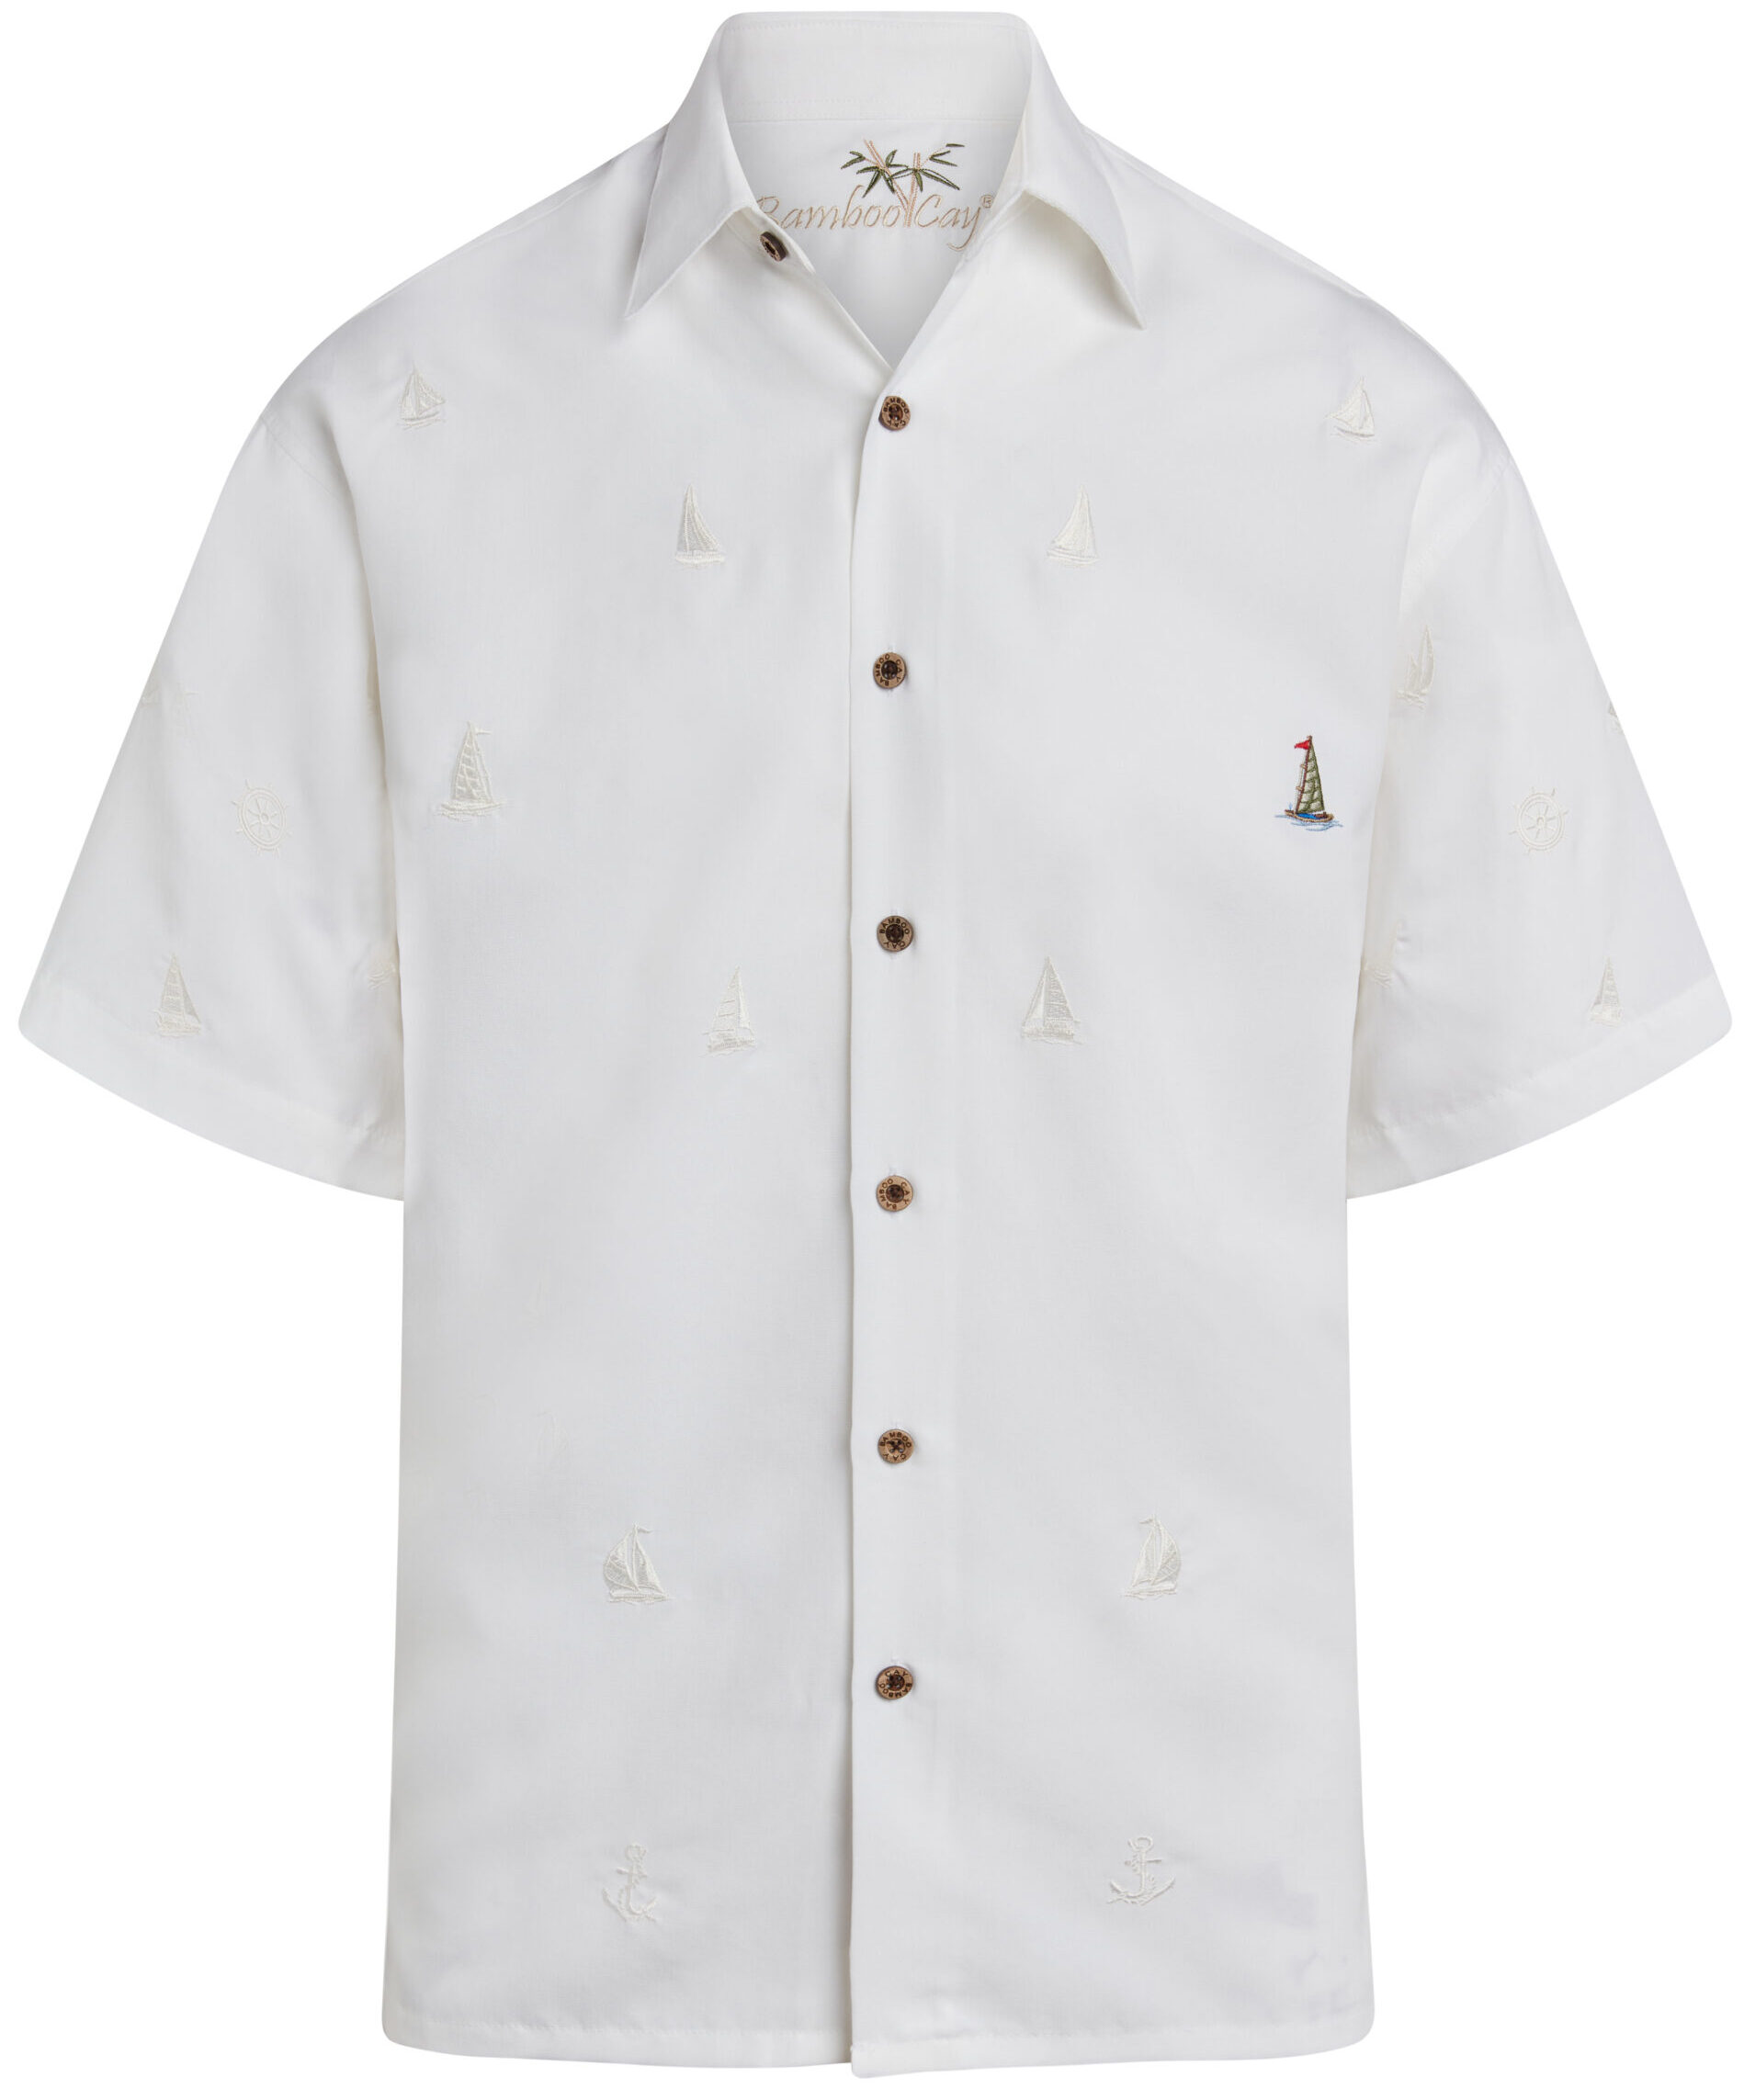 Bamboo Cay sailboat camp shirt off white